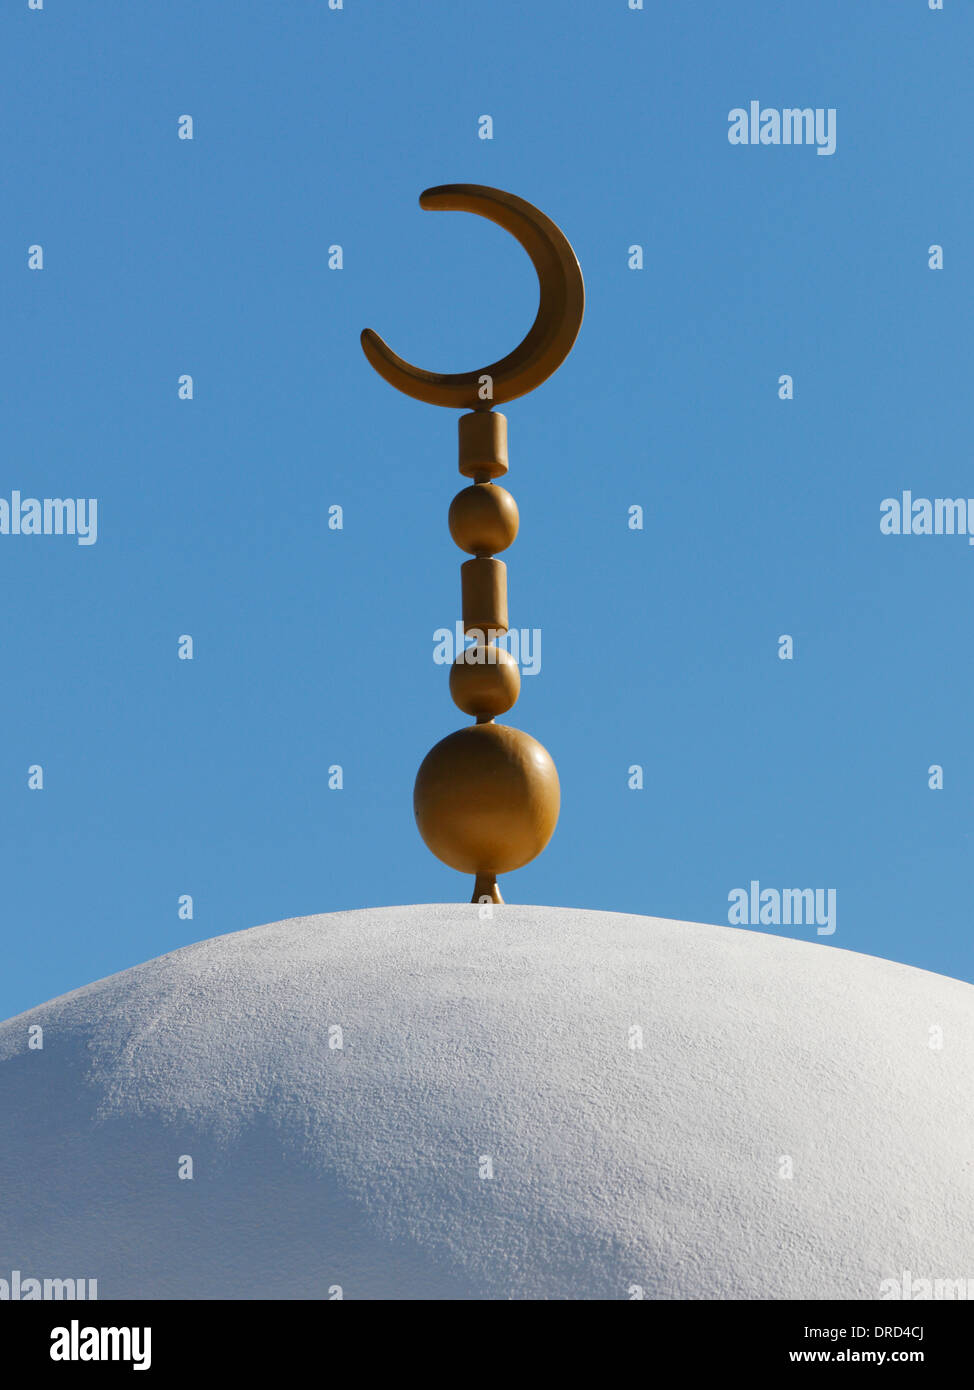 Minarete de la mezquita con la Luna creciente, símbolo del Islam Foto de stock